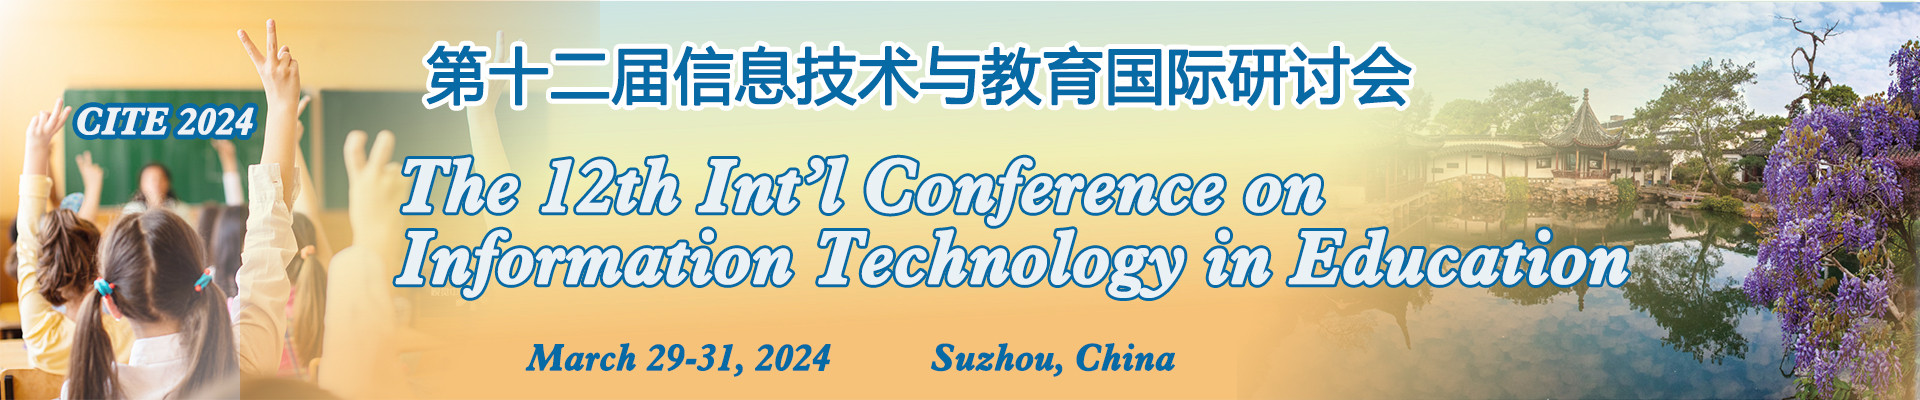 第十二届信息技术与教育国际研讨会(CITE 2024)